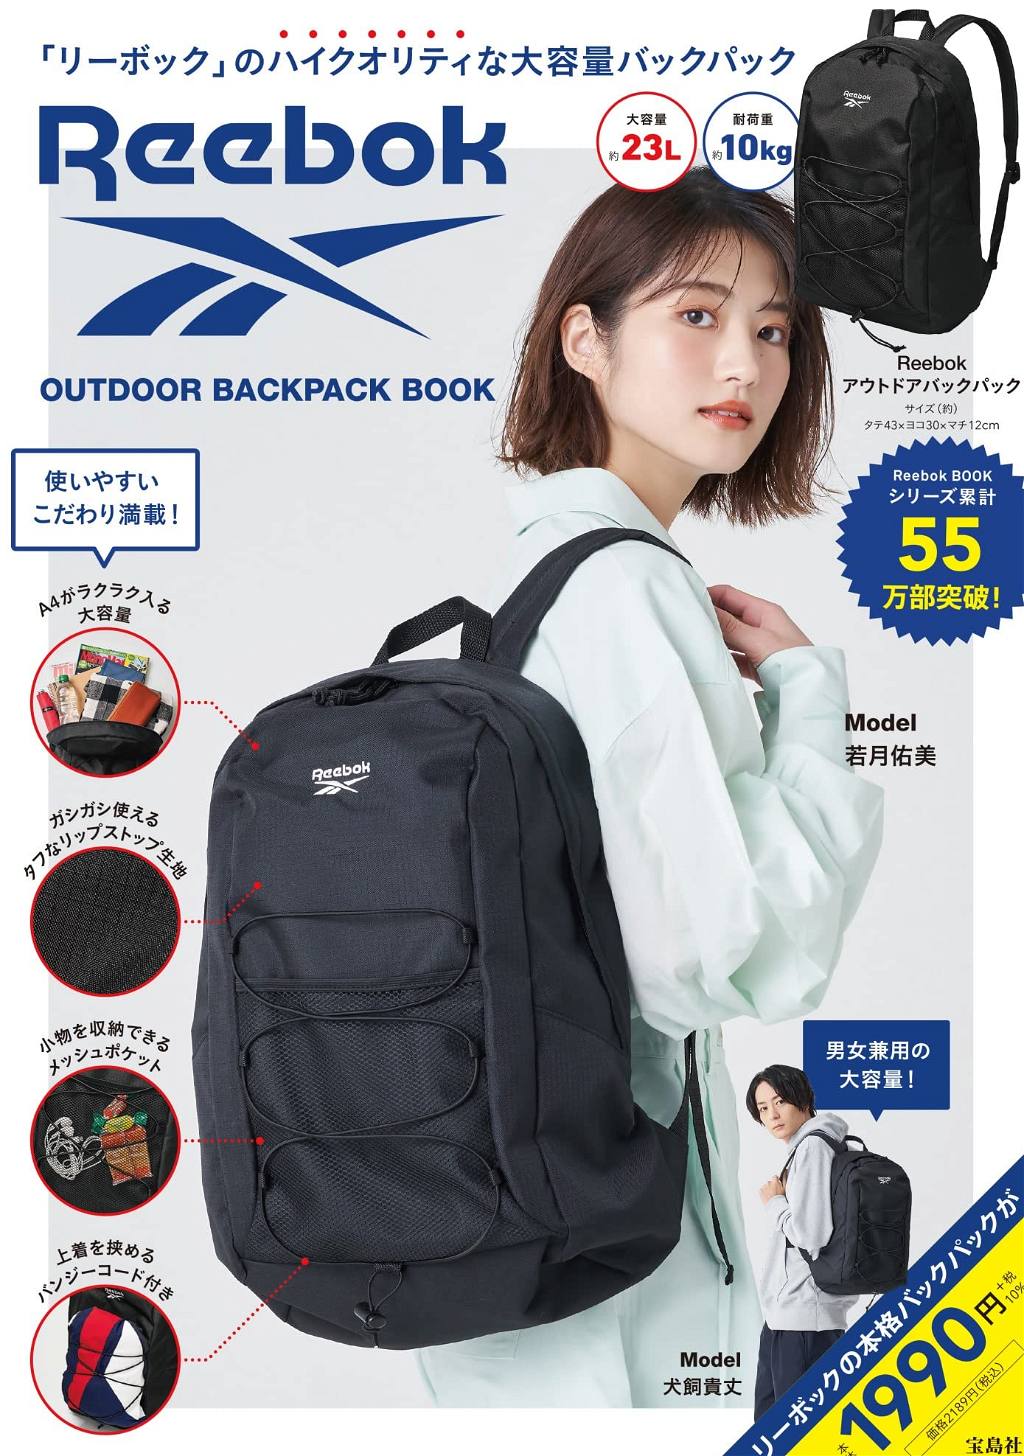 Outdoor Backpack Book